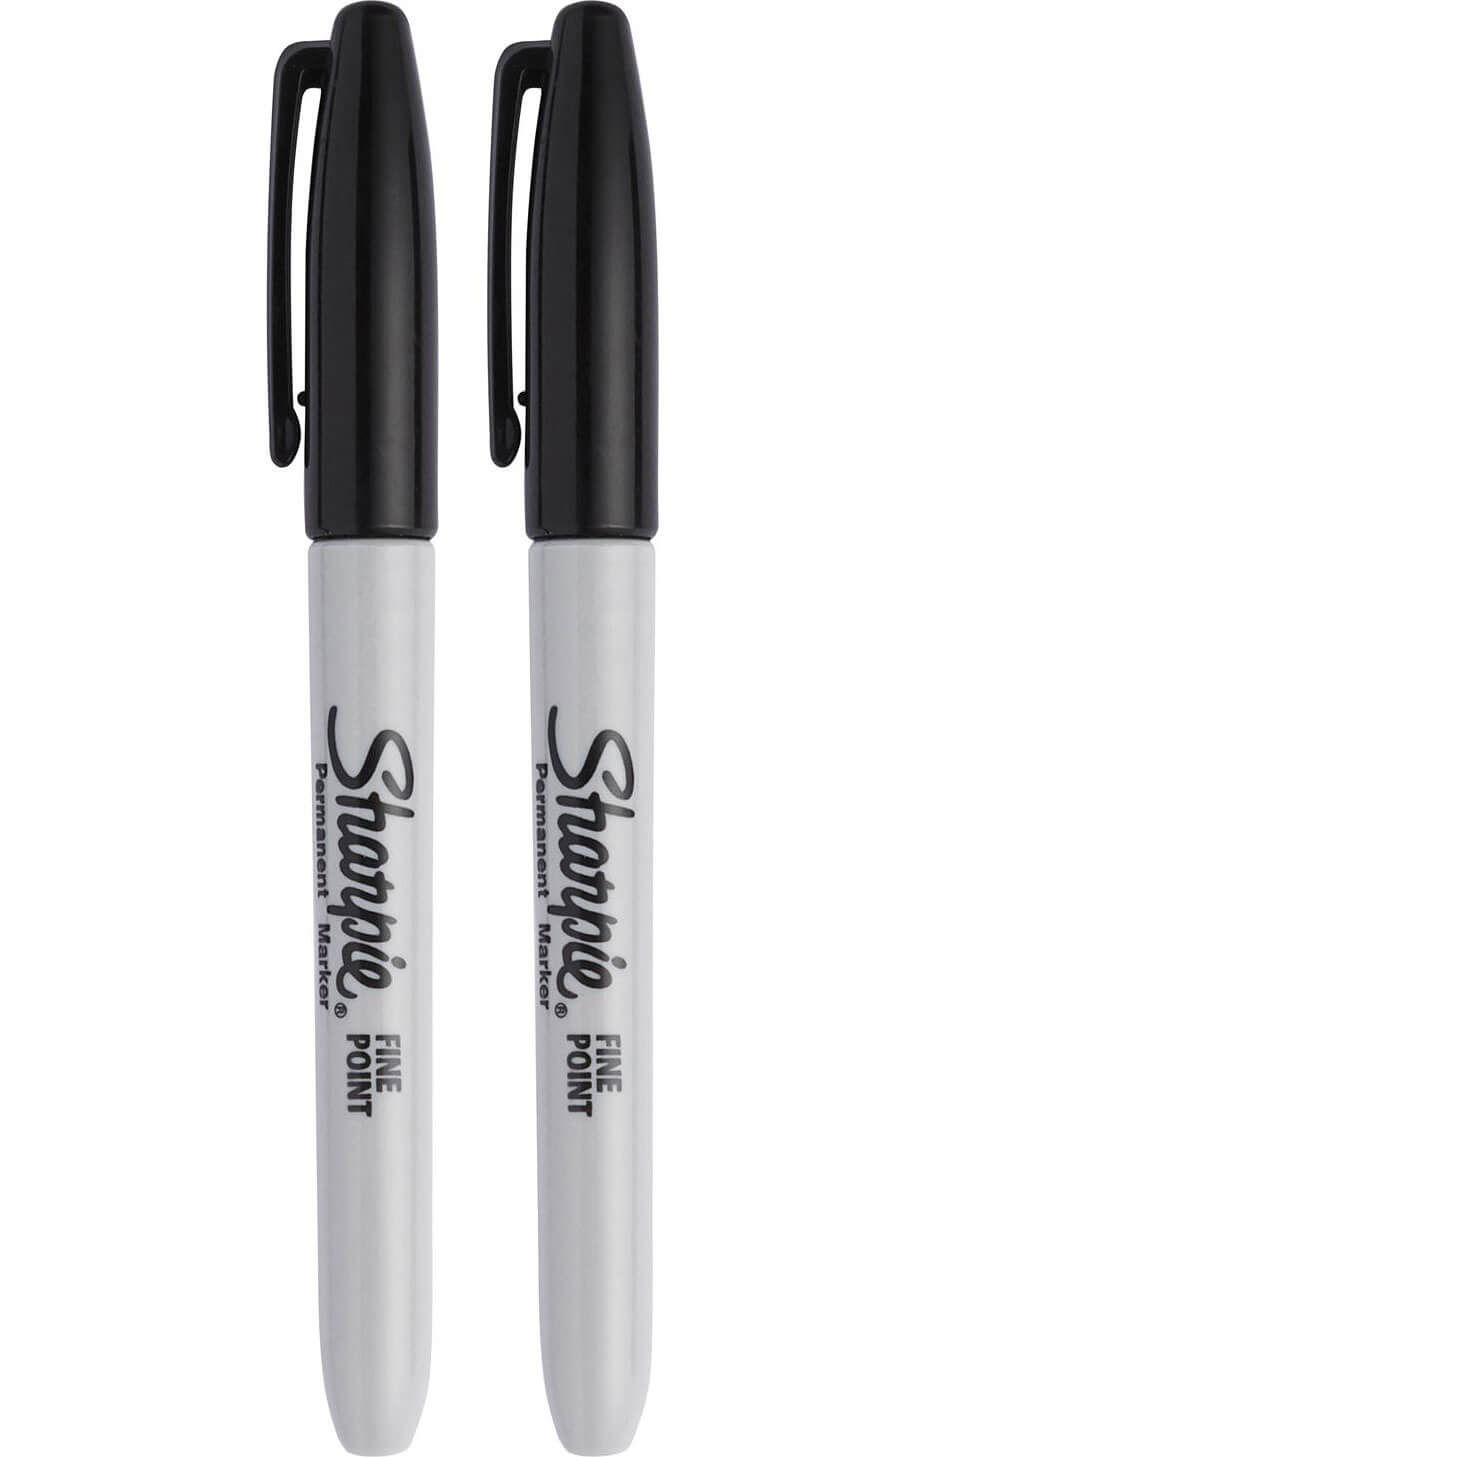 Image of Sharpie Fine Tip Permanent Marker Pen Black Pack of 2